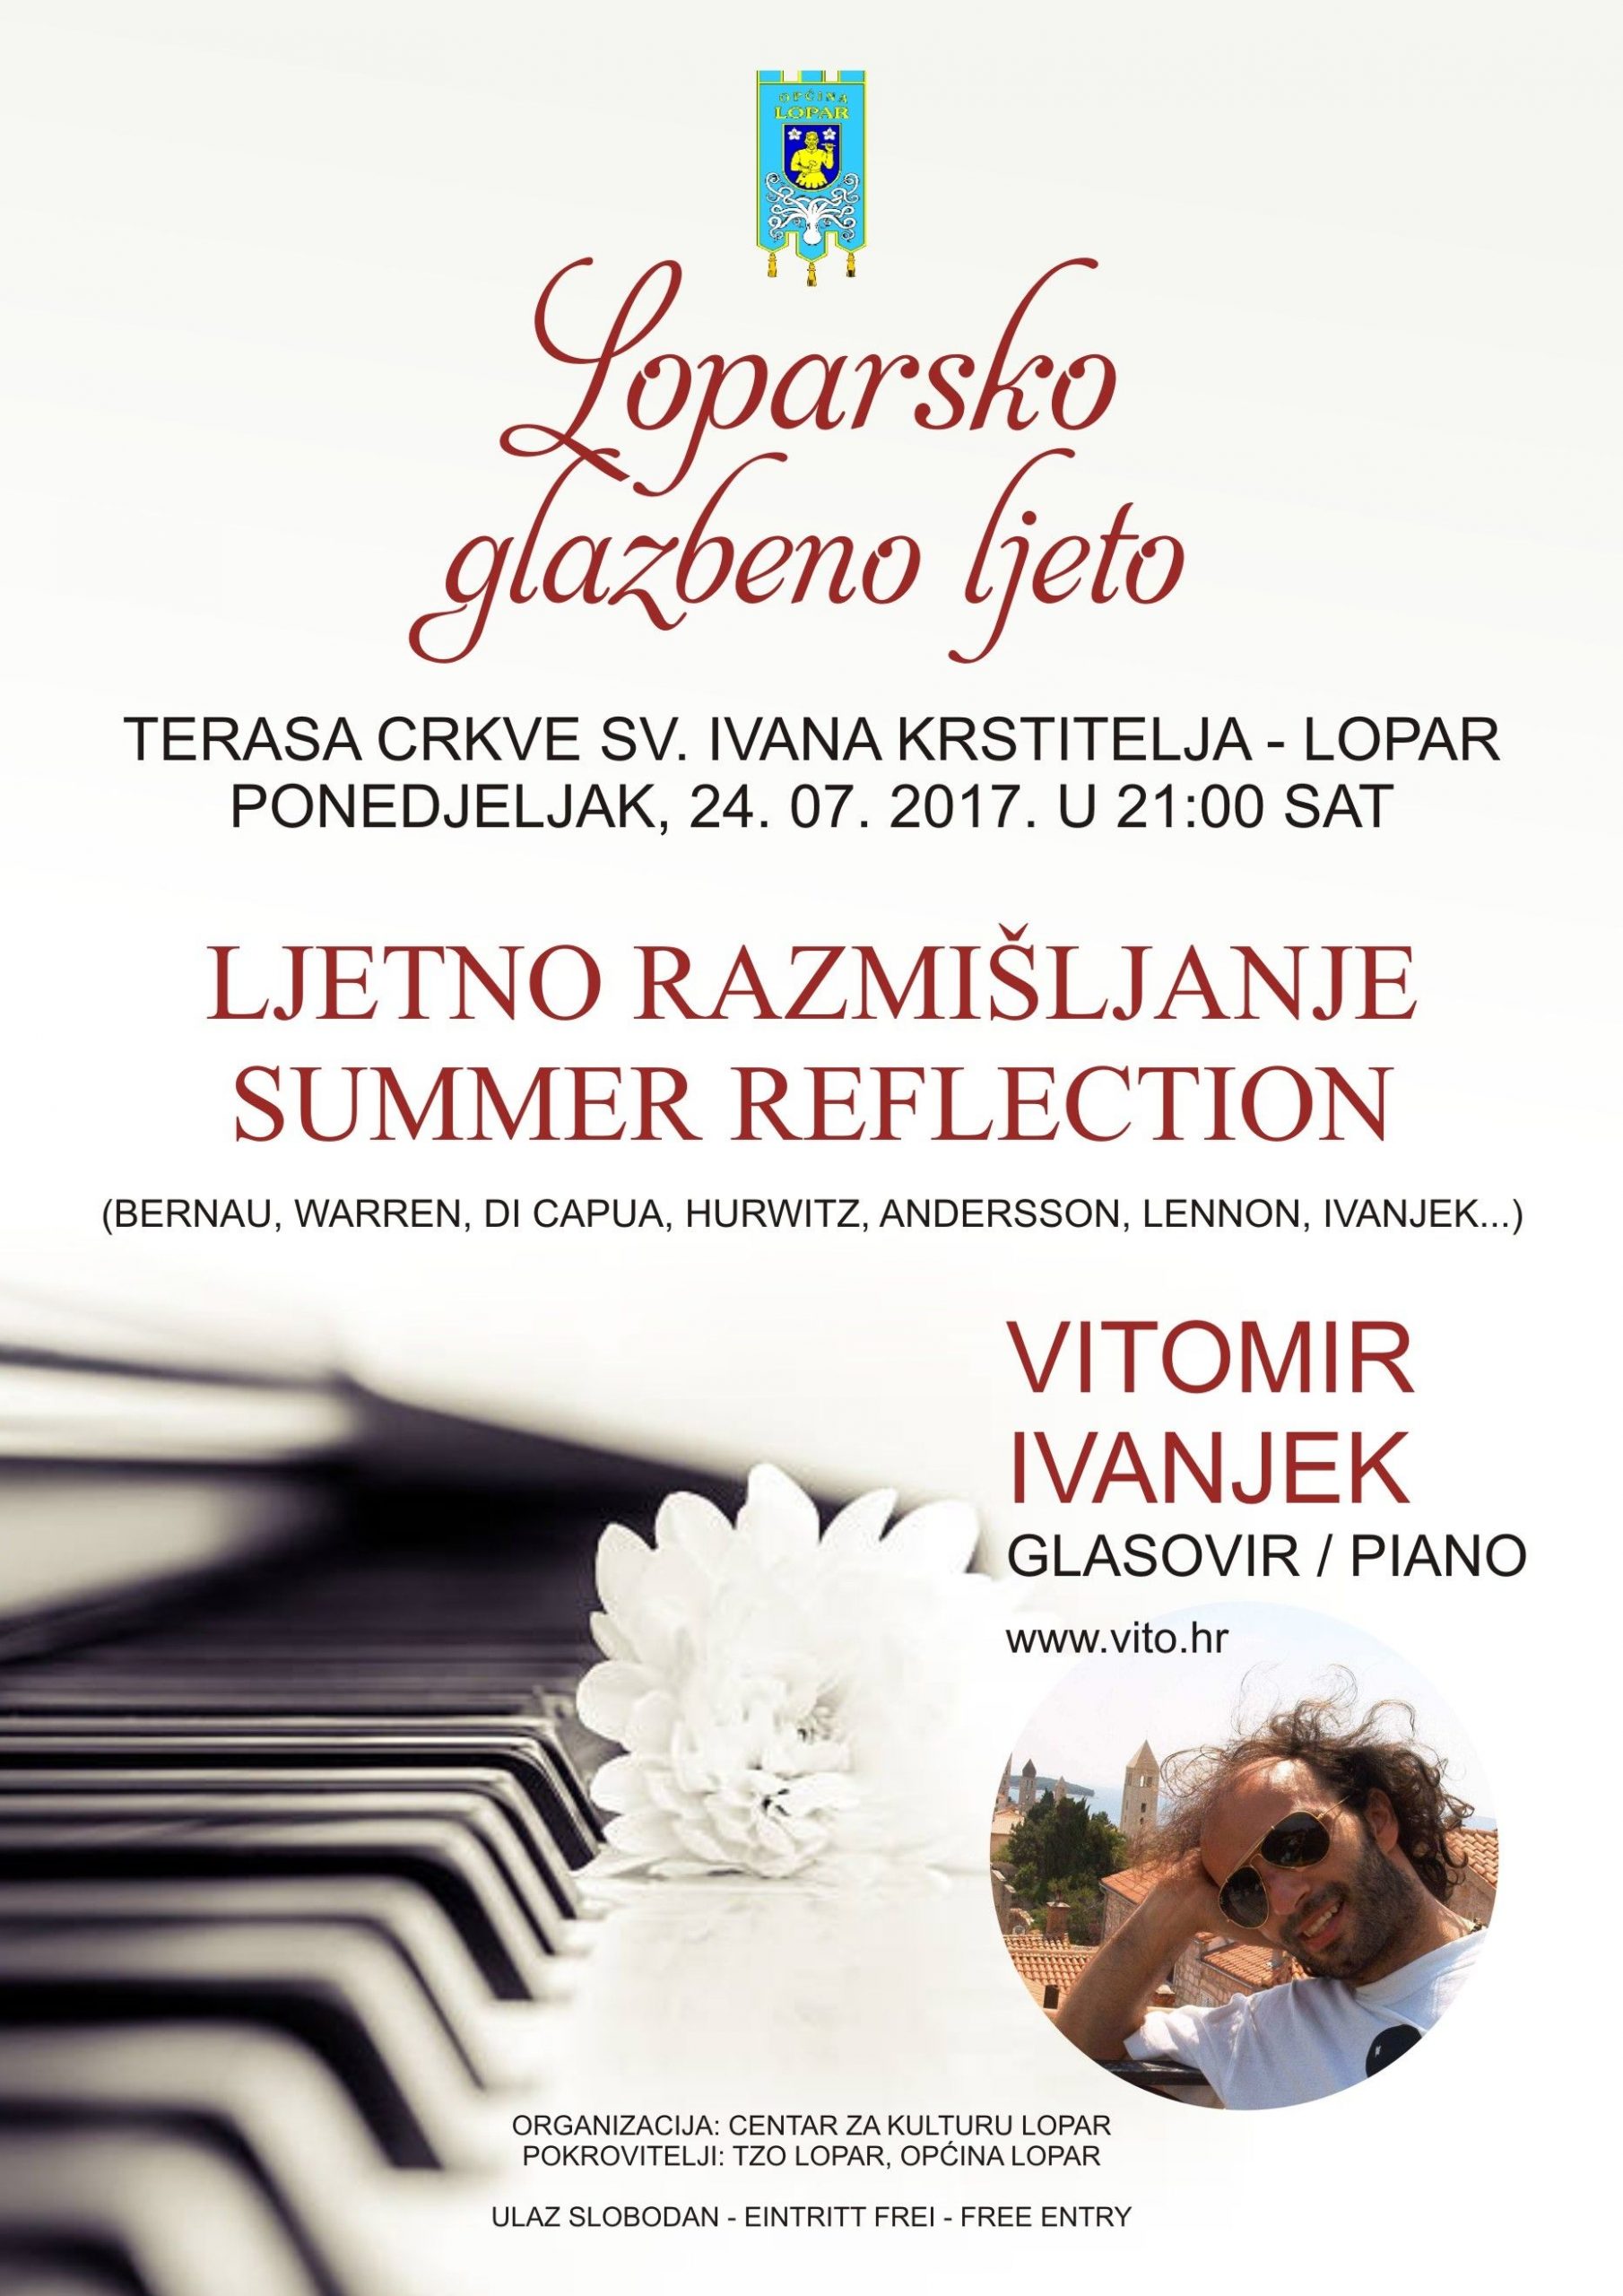 Koncert „Ljetno razmišljanje“ pijanista Vitomira Ivanjeka / Lopar, 24/7/2017 u 21h